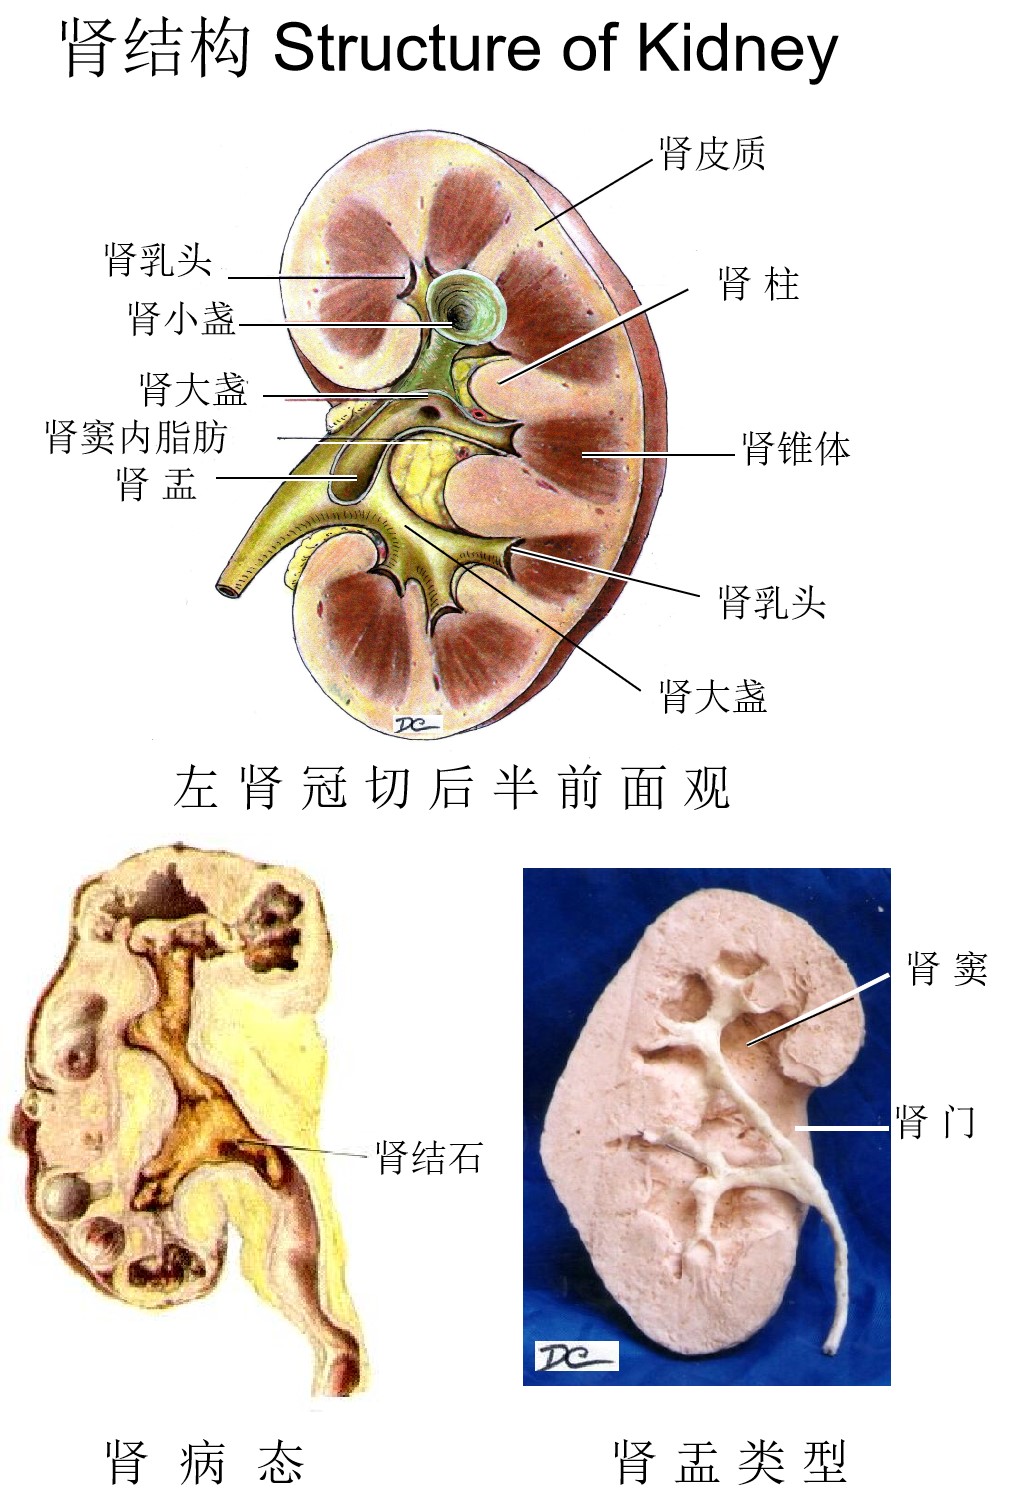 图10～1 肾纵剖面(大体结构)-基础医学-医学